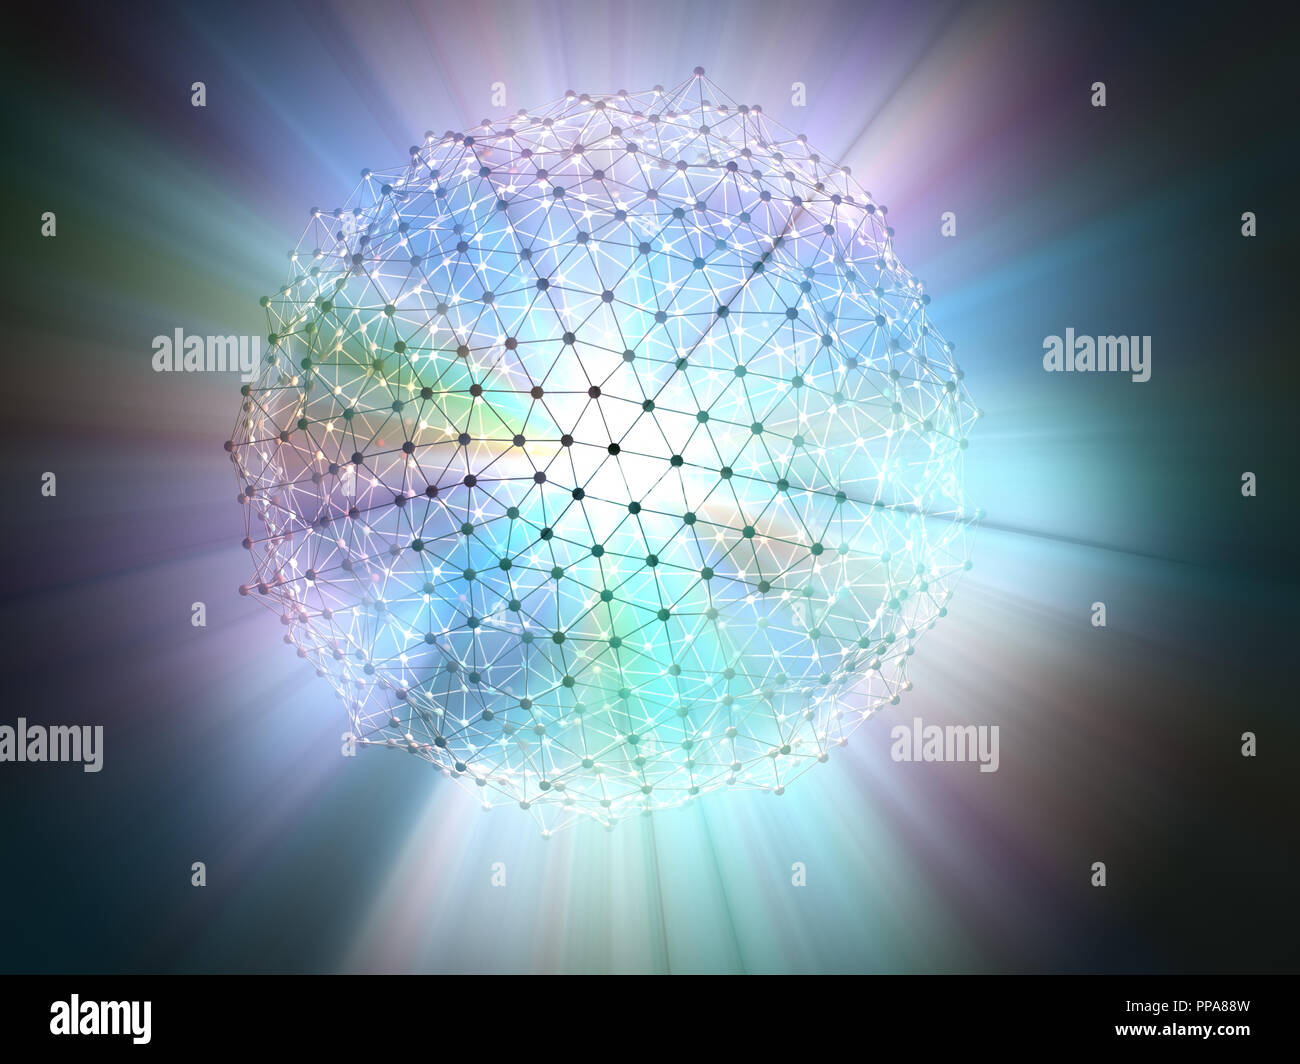 Abstraktes Bild von Wissenschaft und Technologie. Molekulare Verbindungen voller Energie. Stockfoto